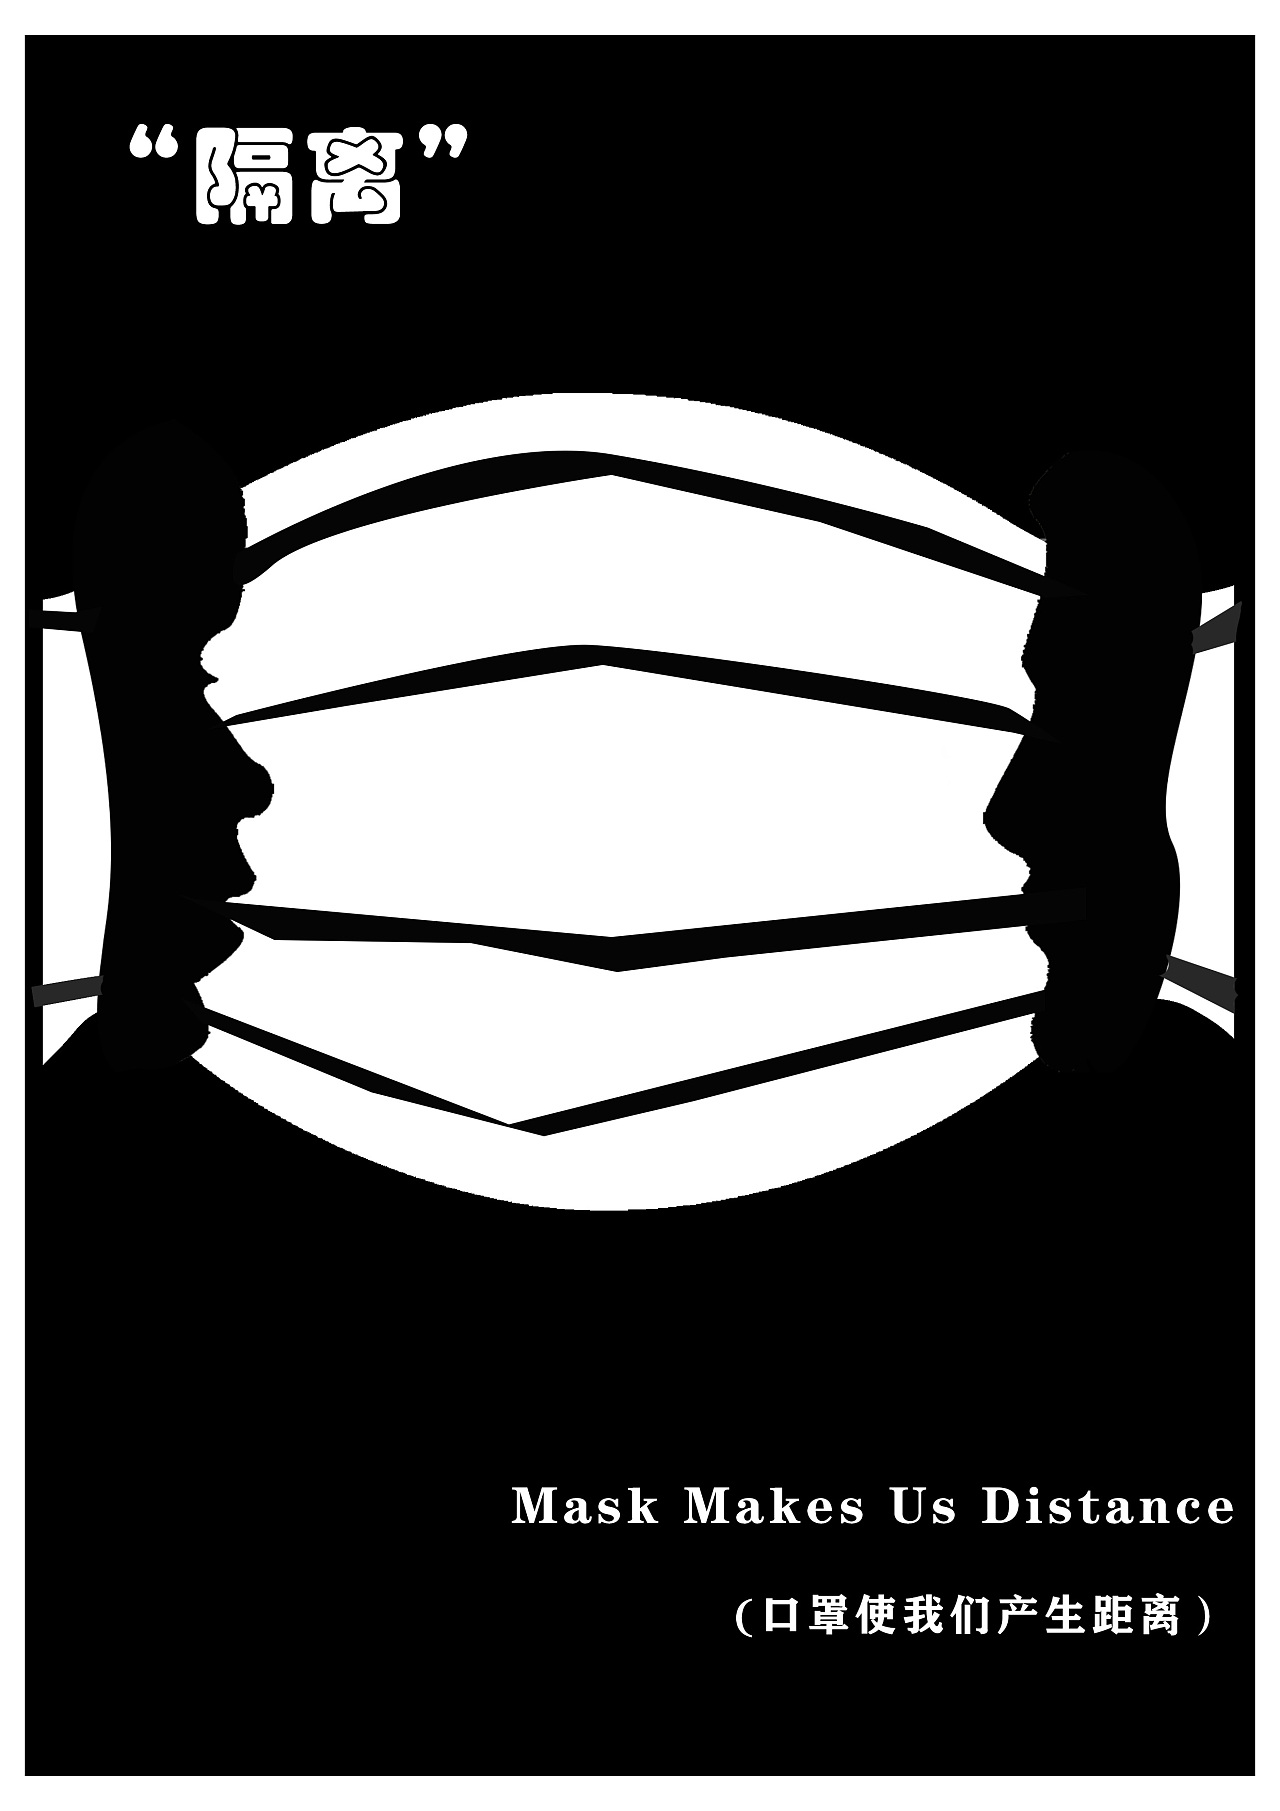 海报设计中,使用"同构"将人与口罩联系起来,"口罩"阻止了我们之间亲密